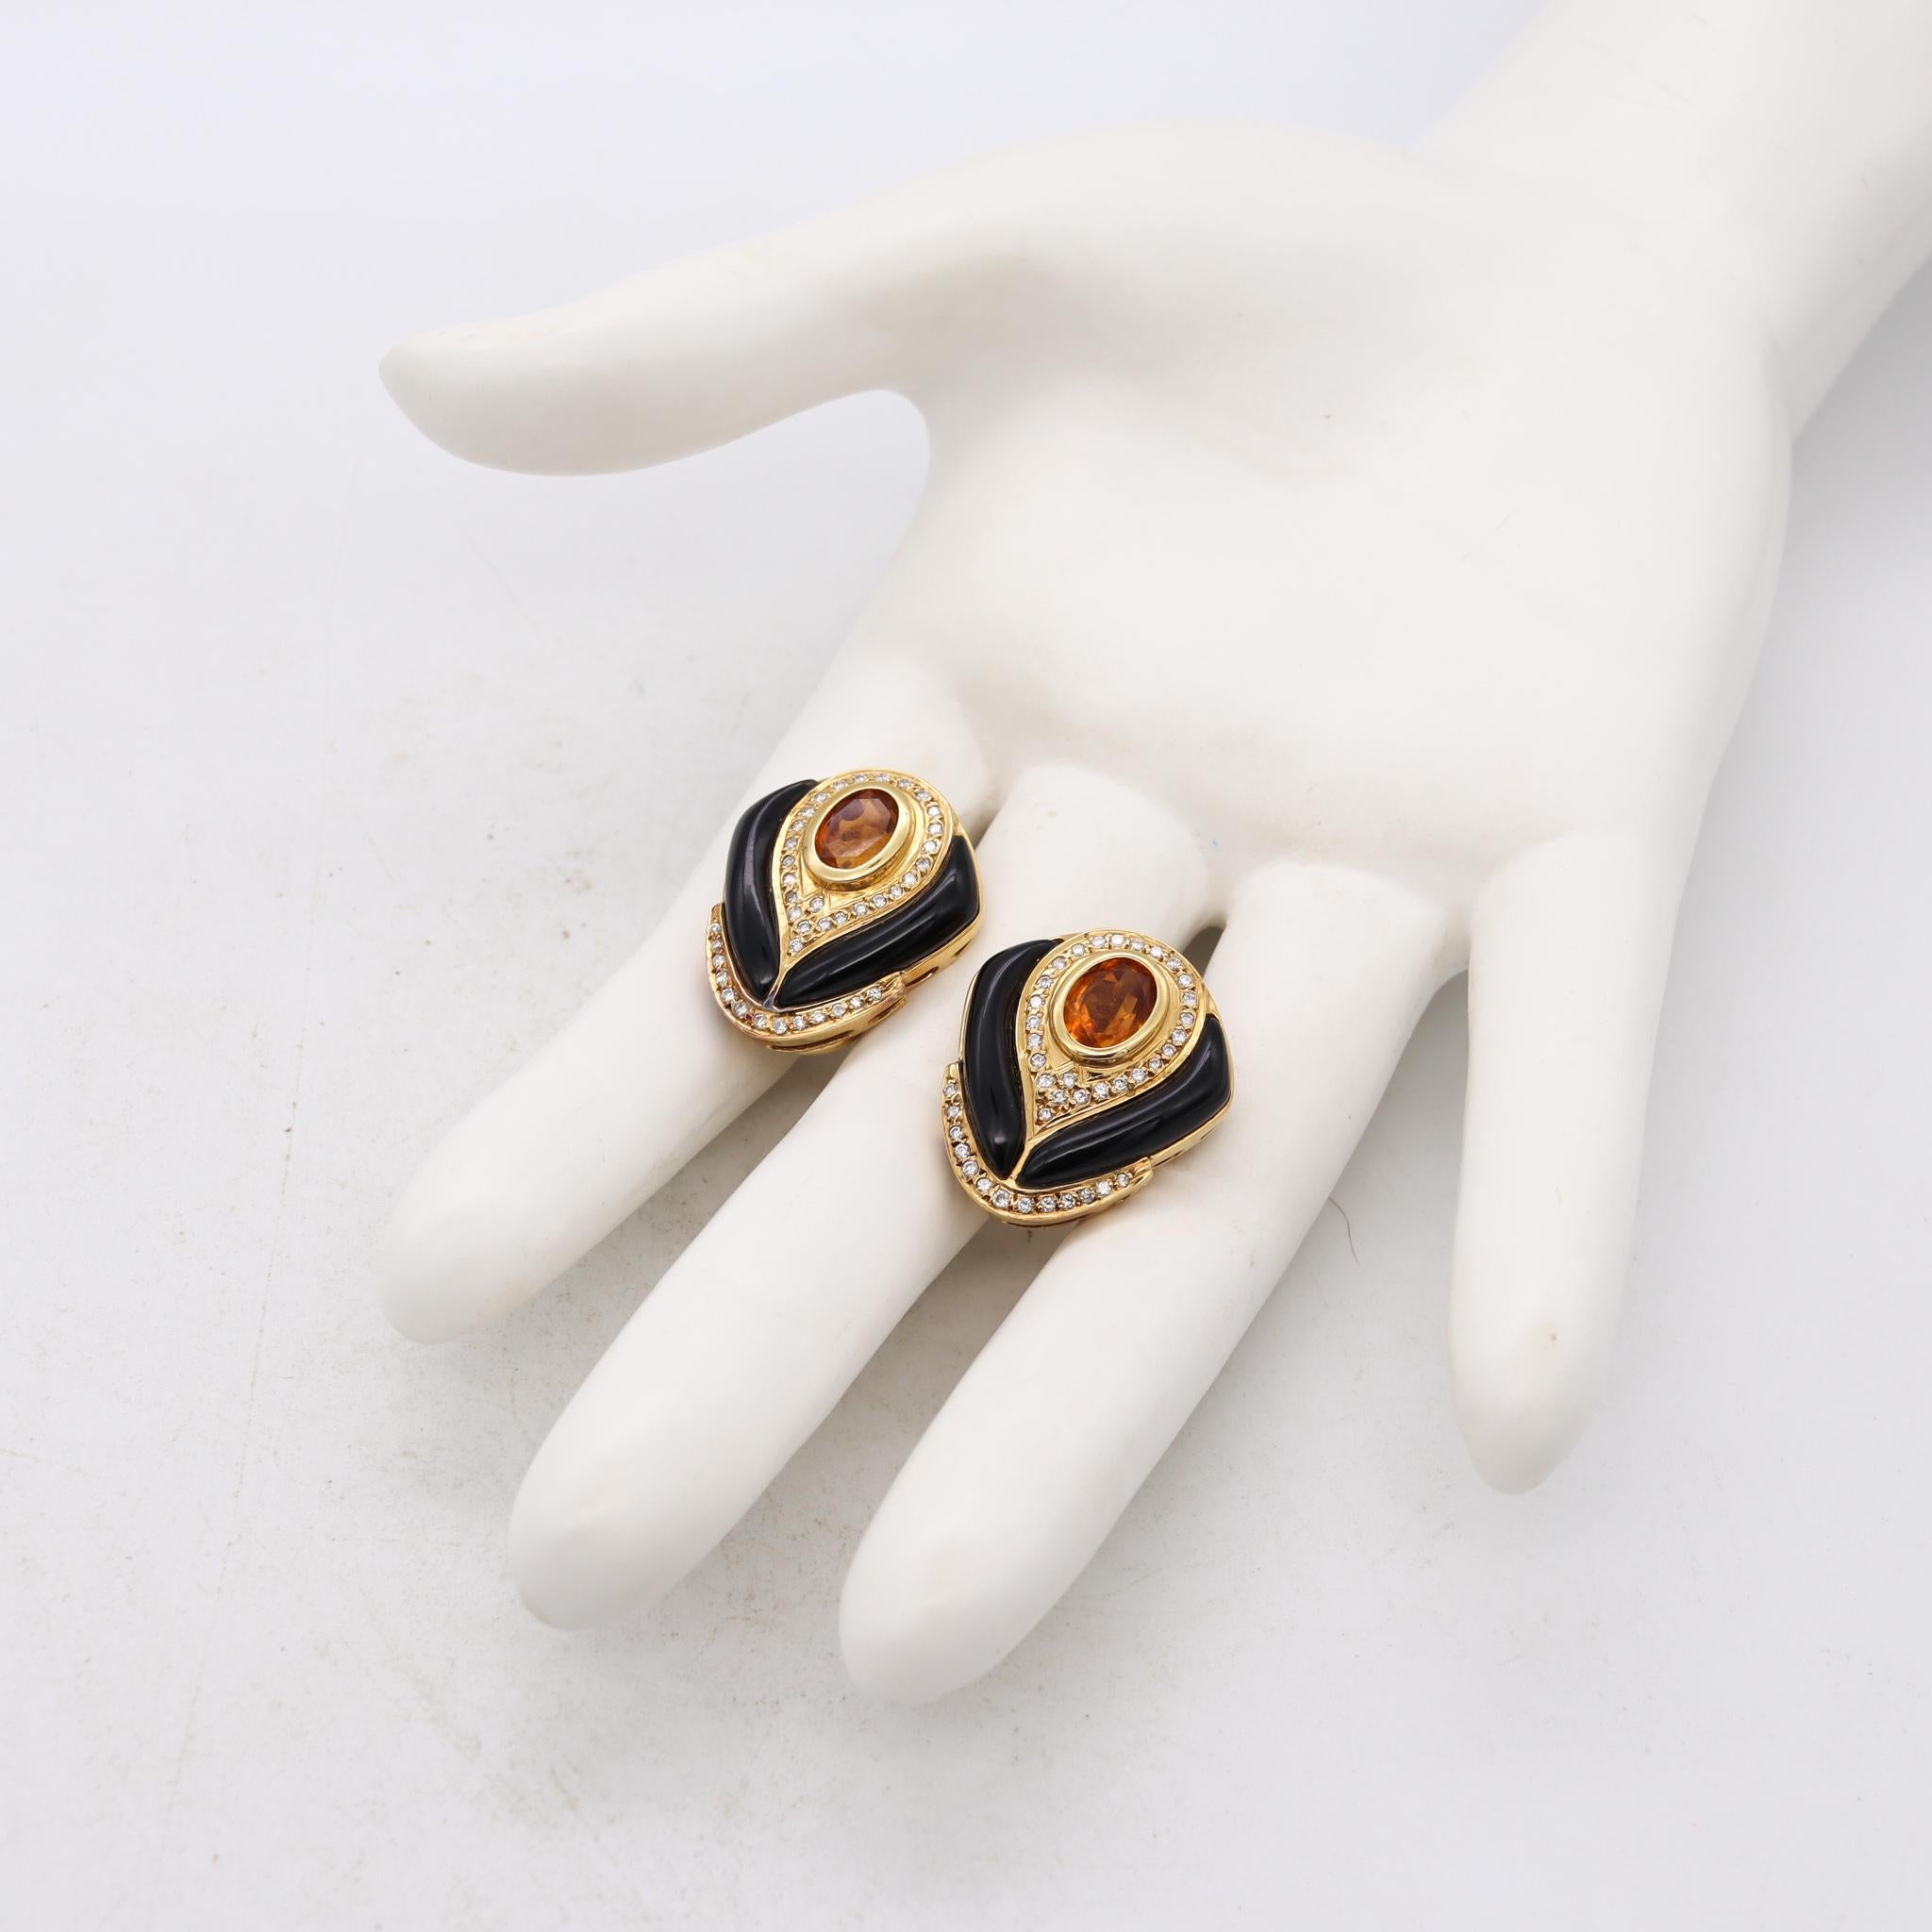 Modernist Modern Italian Designer Gem Set Earrings 18Kt Gold 4.56 Ct Diamond And Gemstones For Sale